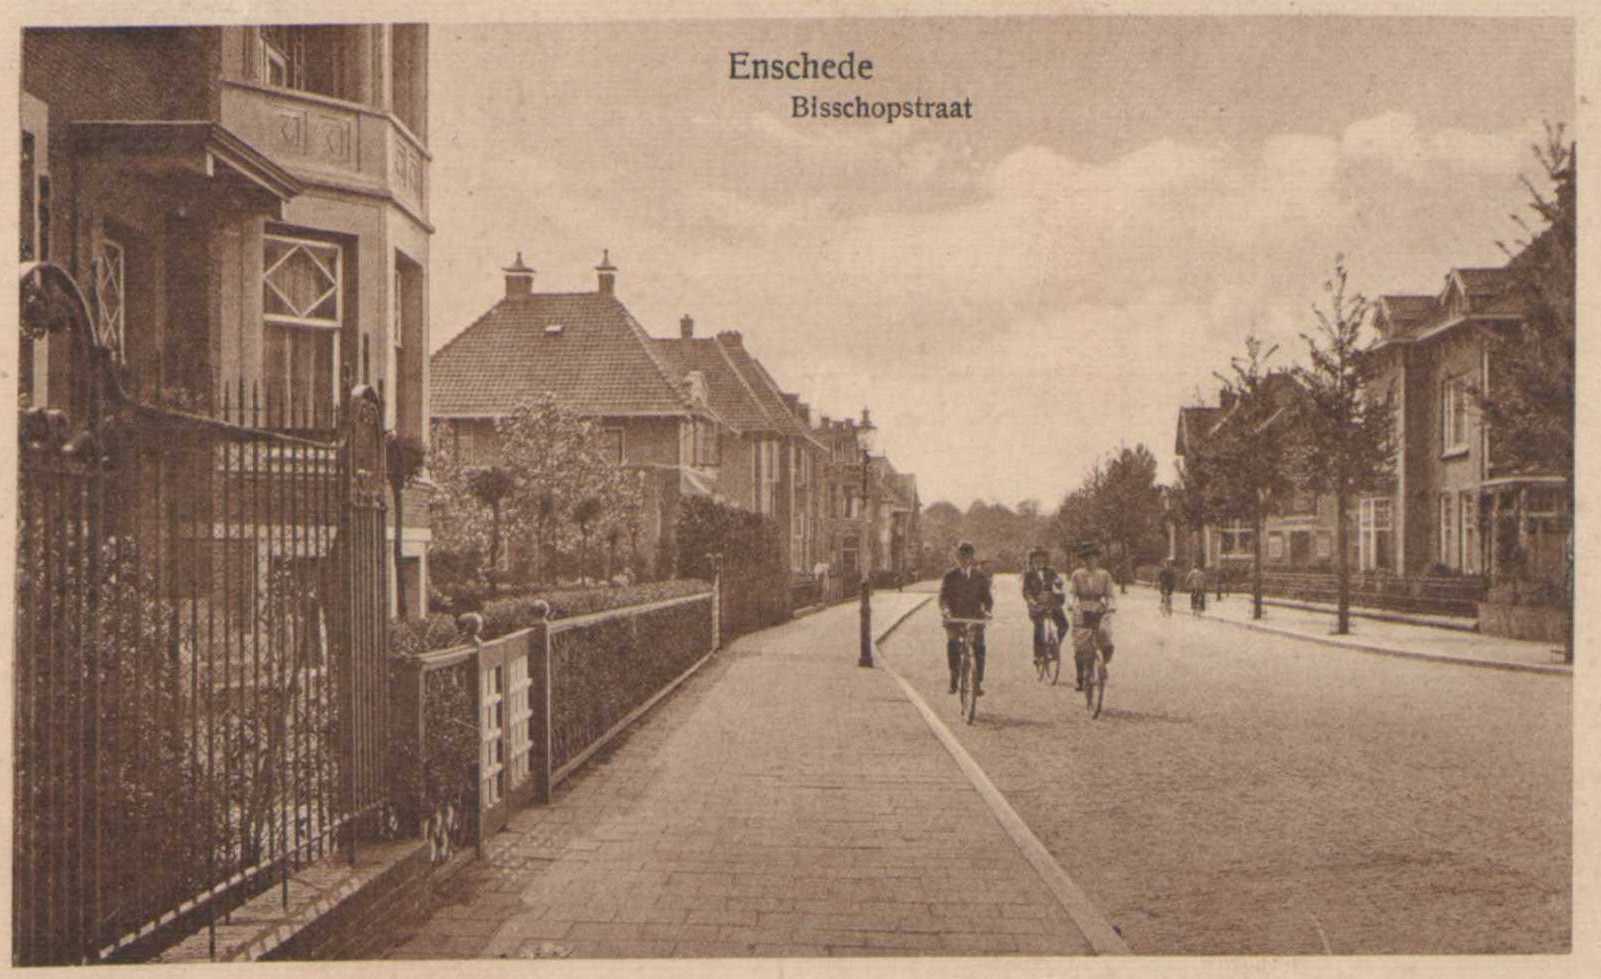 Bisschopstraat--1930.jpg